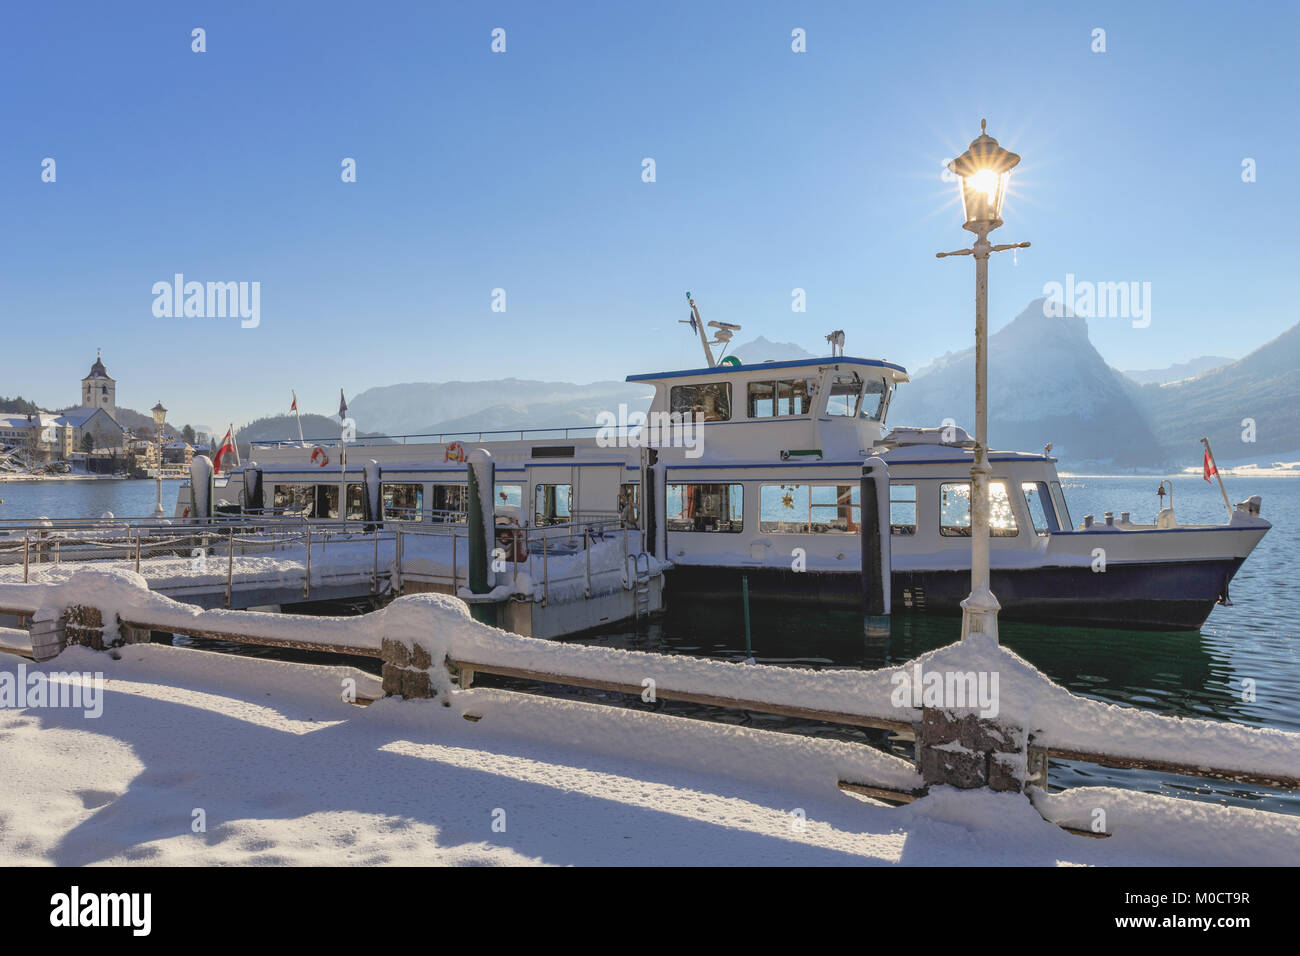 Turista nave da crociera al molo sul lago Wolfgangsee in inverno, sullo sfondo la città di St. Wolfgang Foto Stock